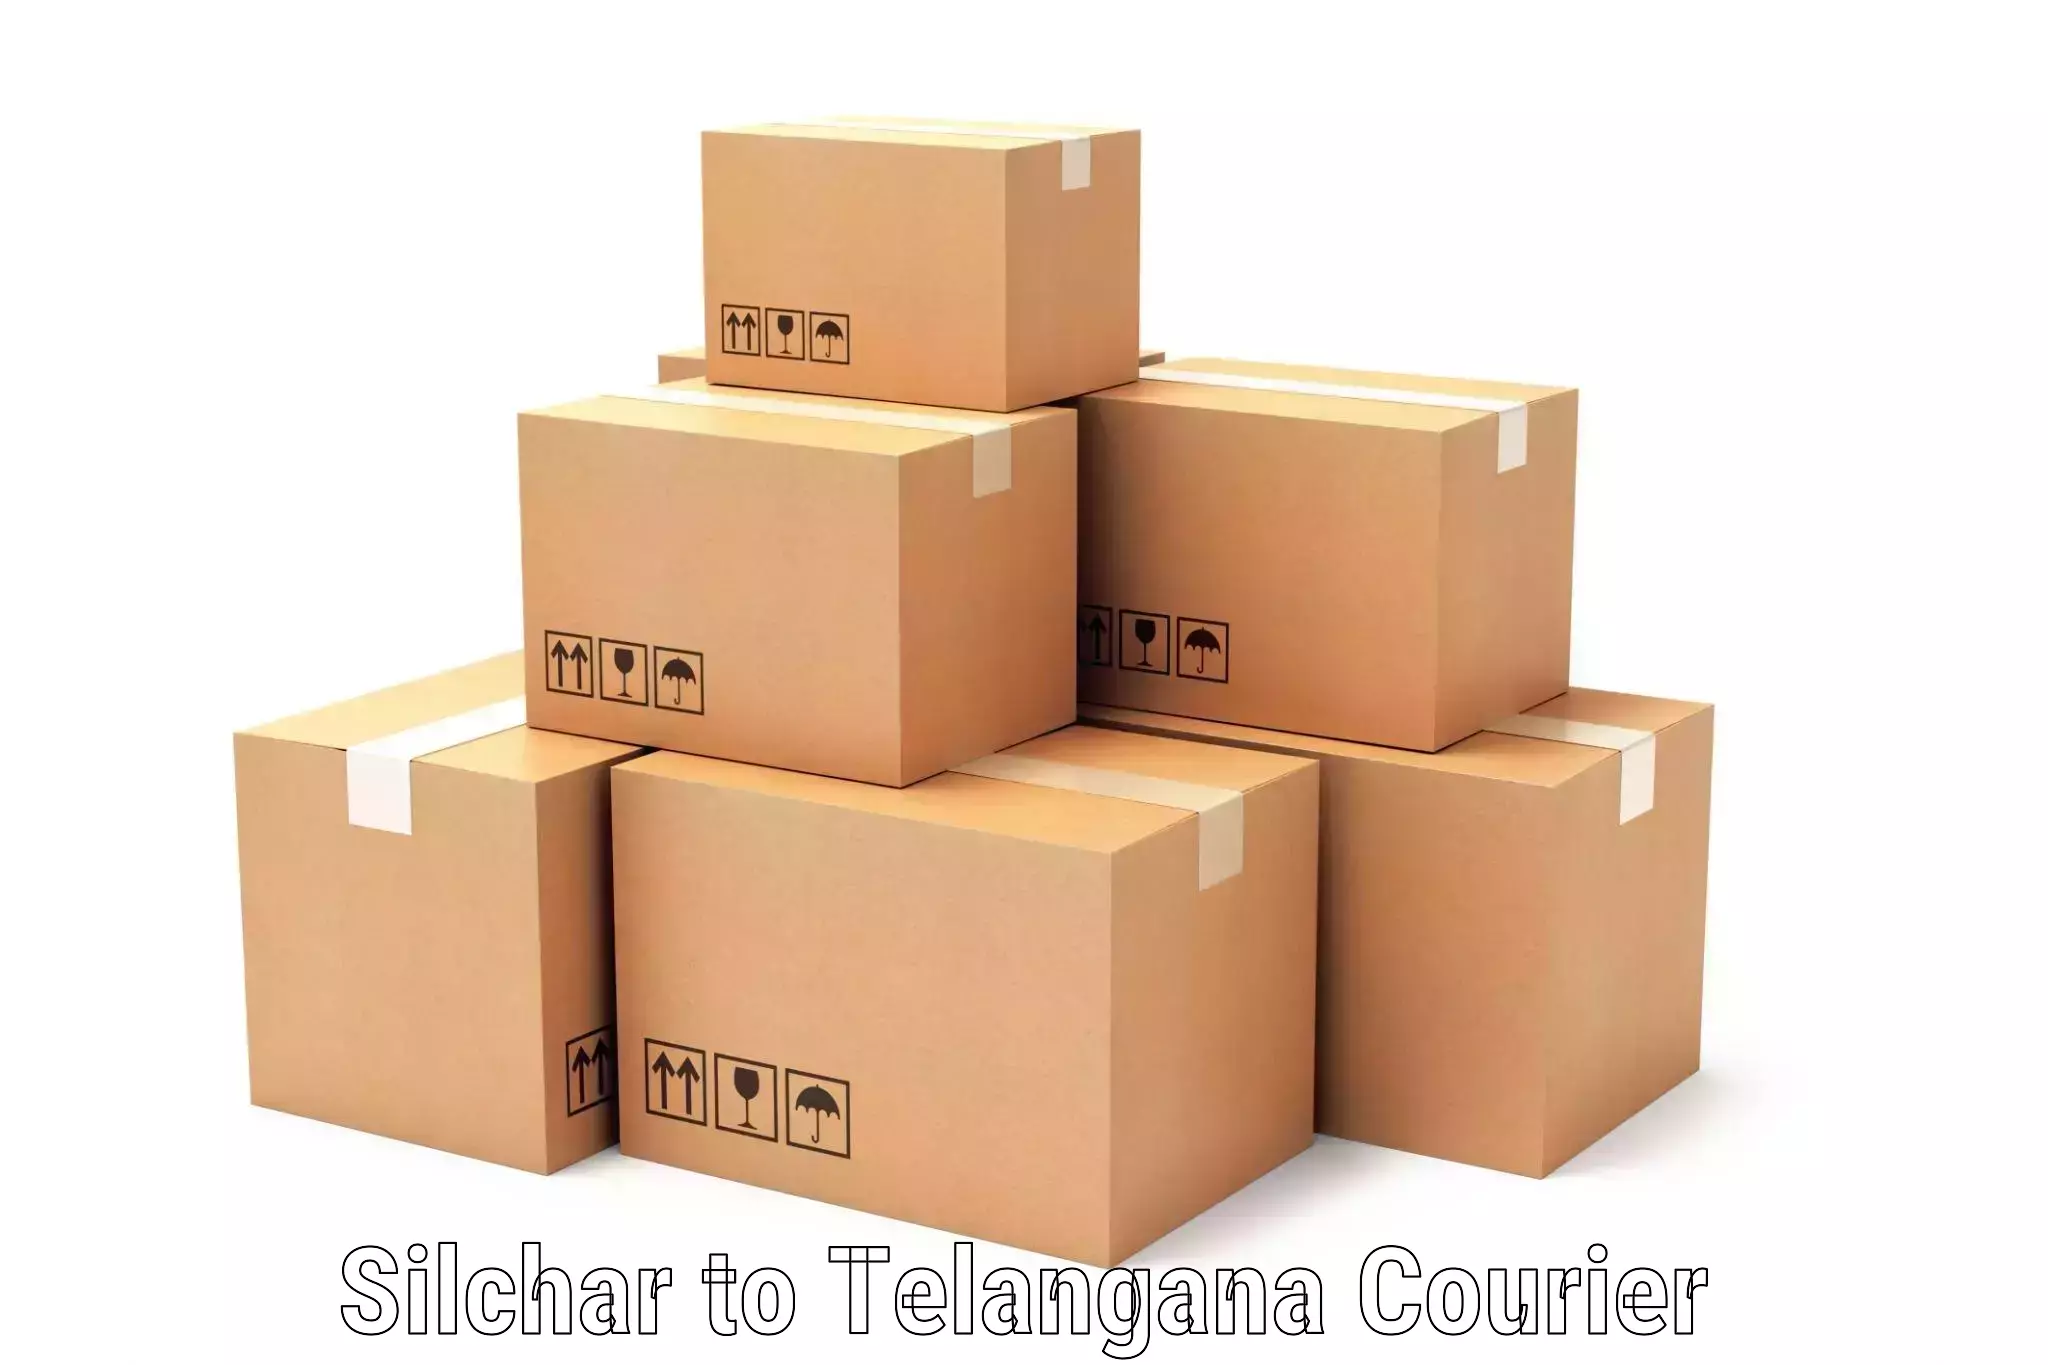 Customer-centric shipping in Silchar to Peddapalli